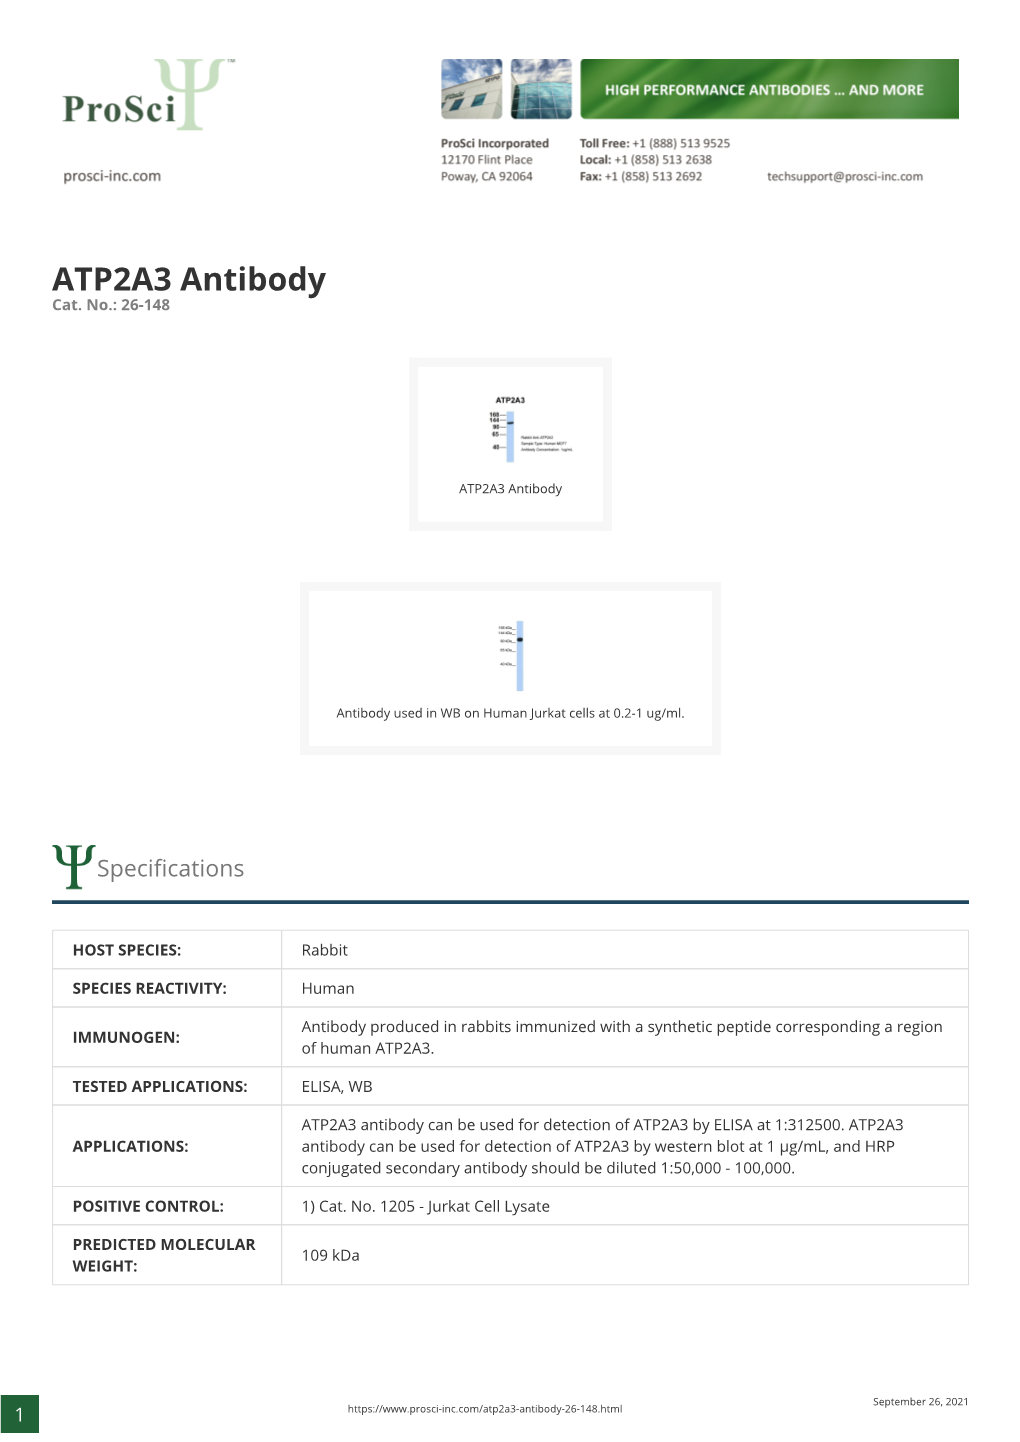 ATP2A3 Antibody Cat